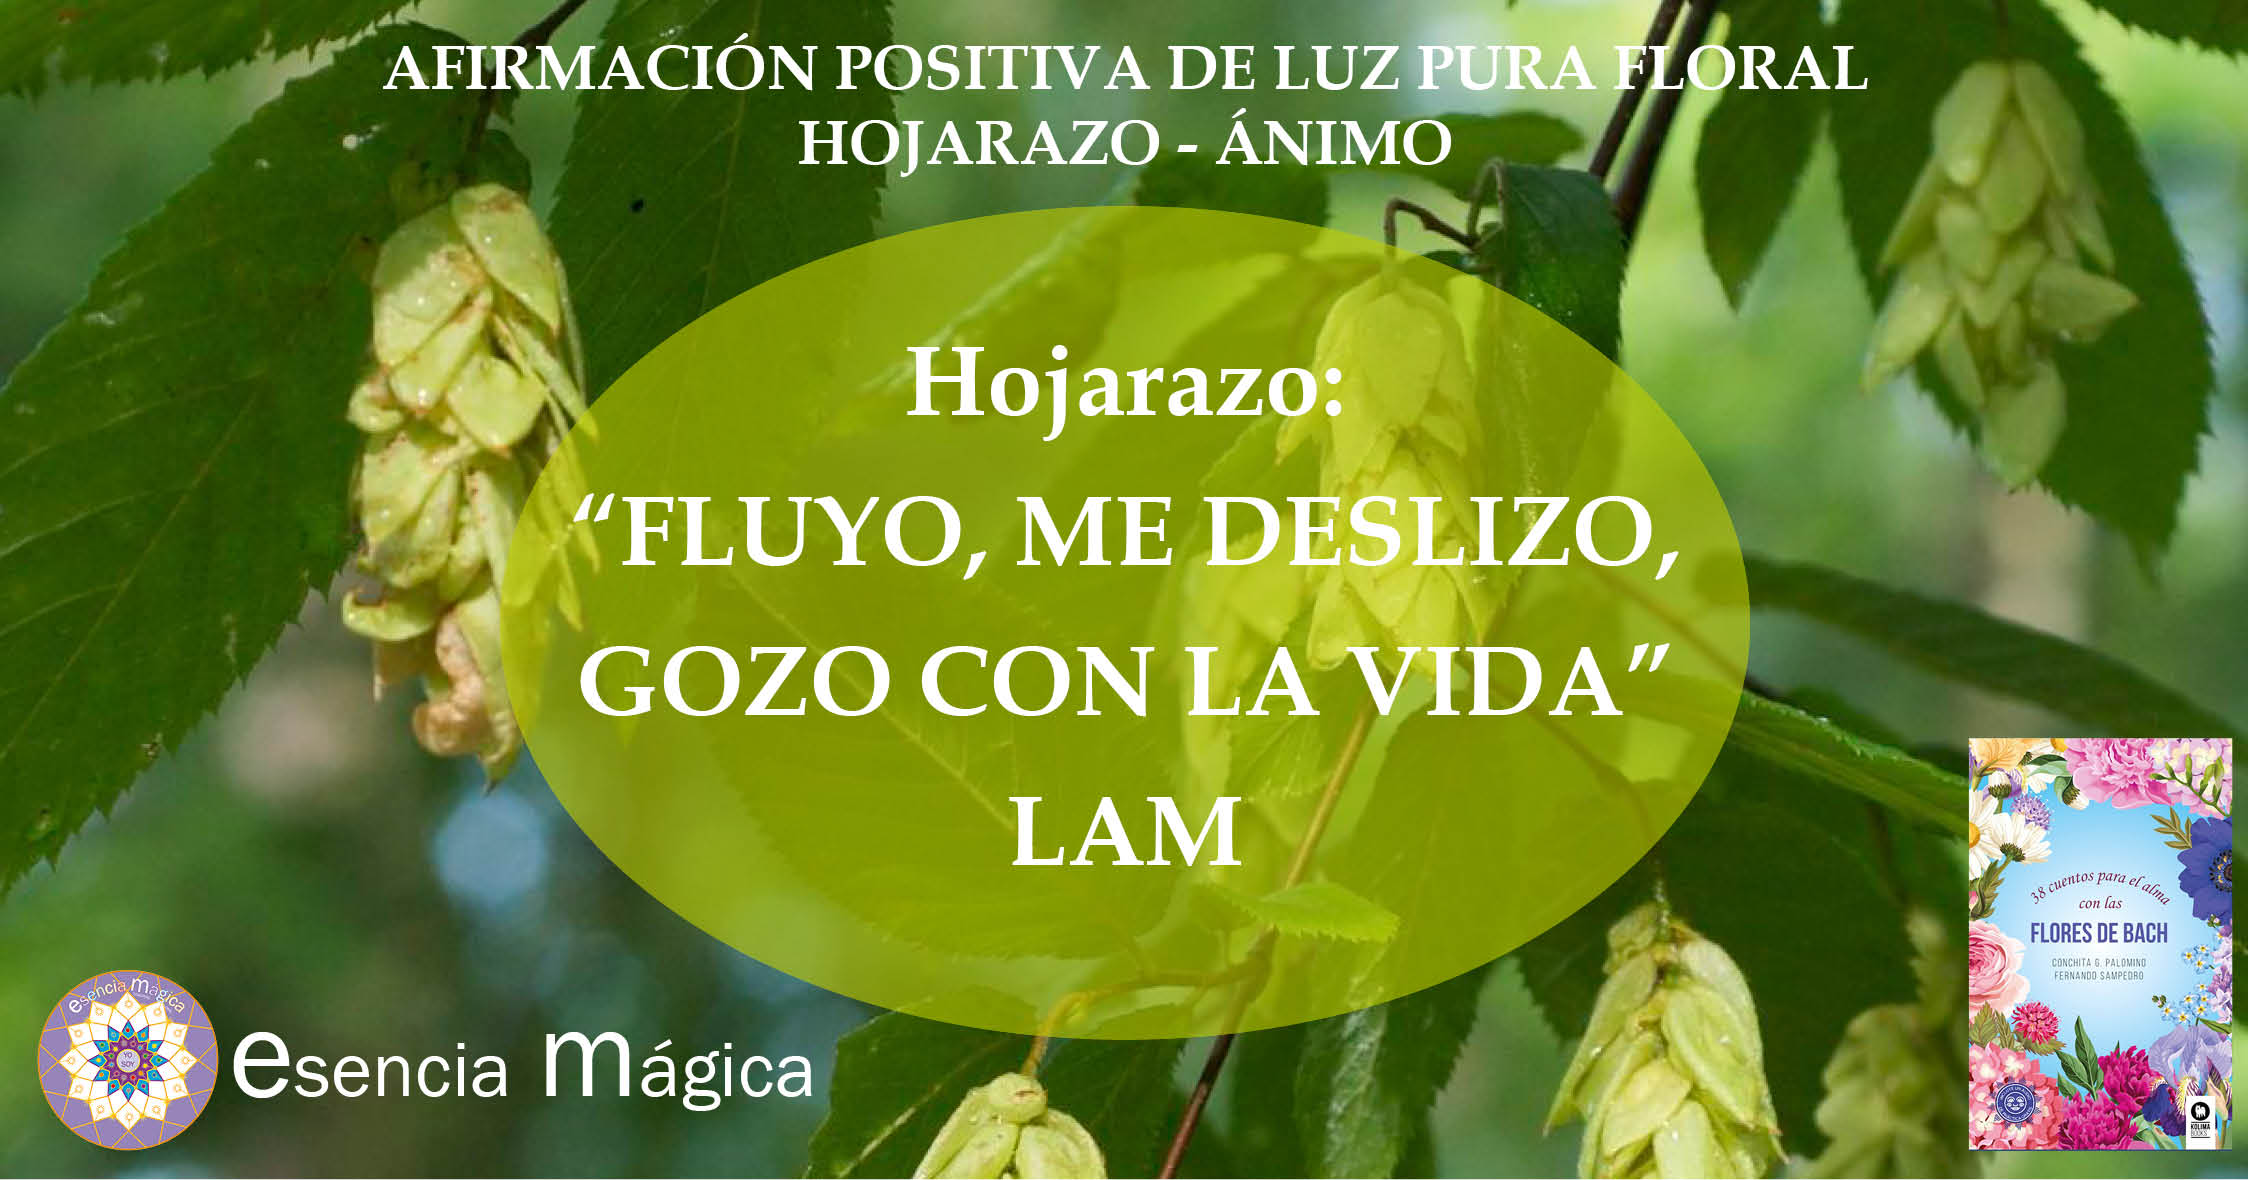 Afirmación positiva de Luz Pura Floral. Hojarazo- Ánimo